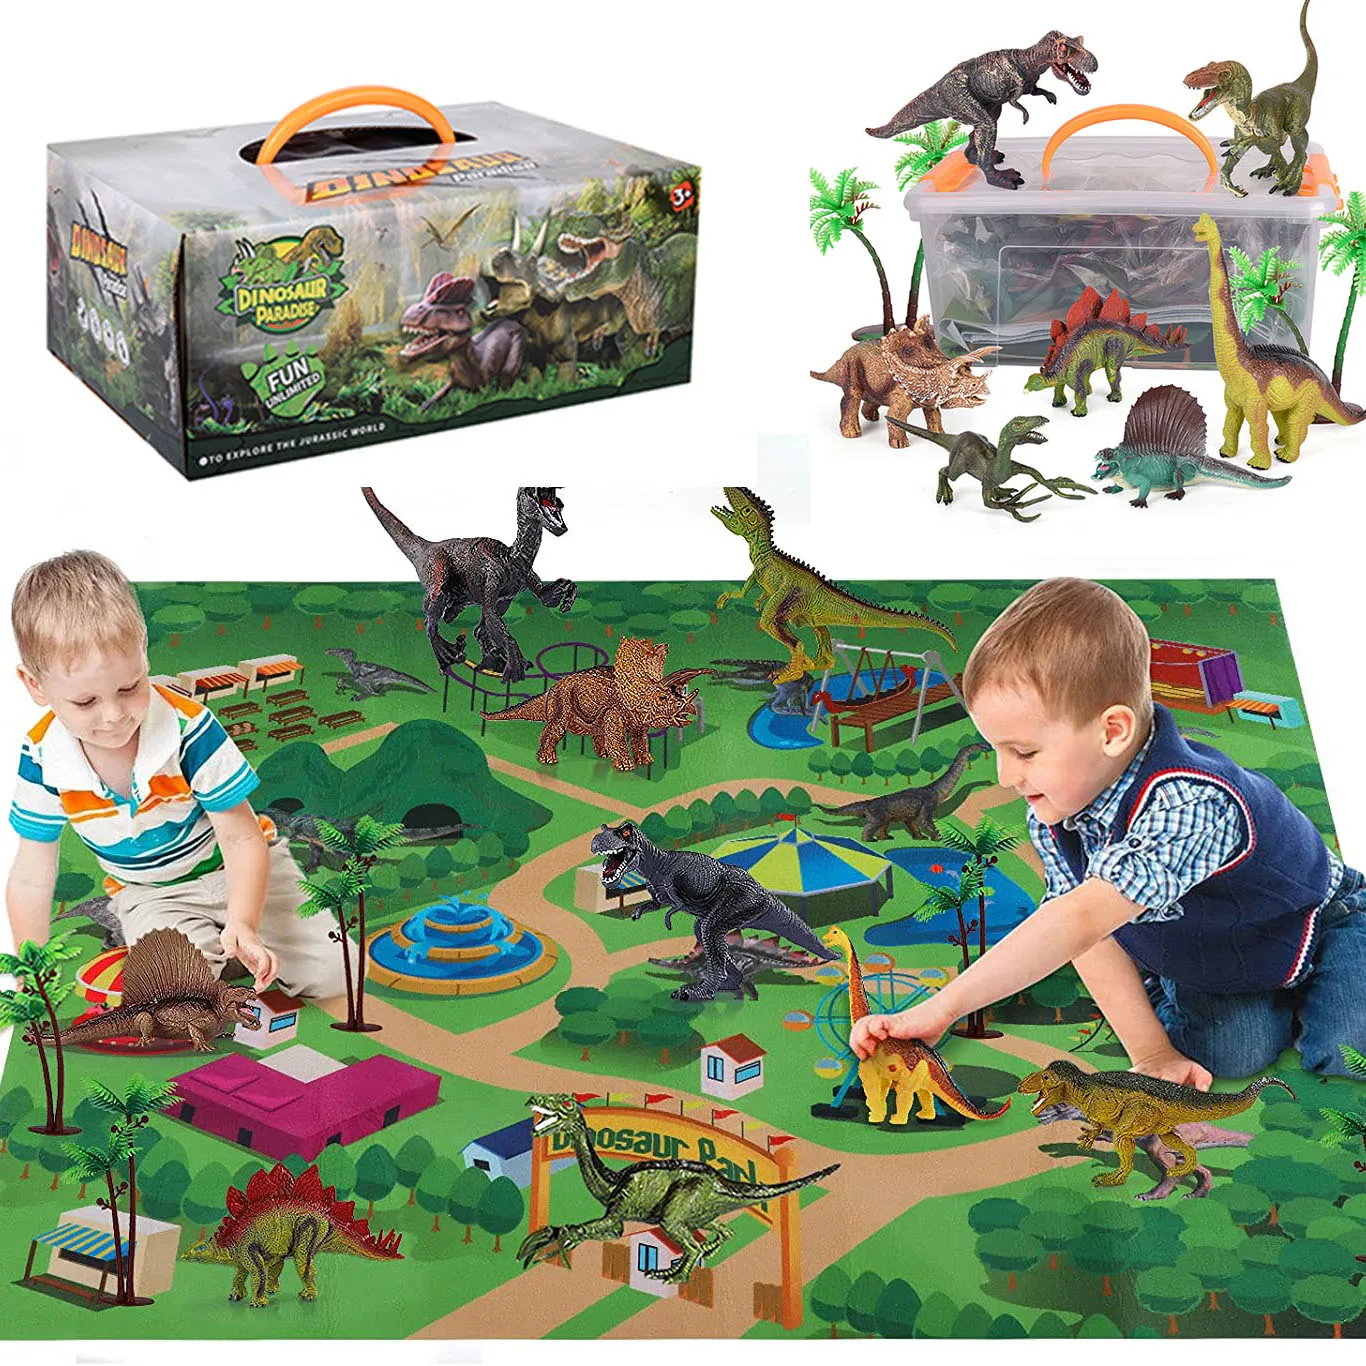 Nueva figura de dinosaurio de juguete para bebés, tapete de juego de actividades para bebés, árboles, juego de juegos de dinosaurios realistas, juegos de dinosaurios, regalos para niños y niñas